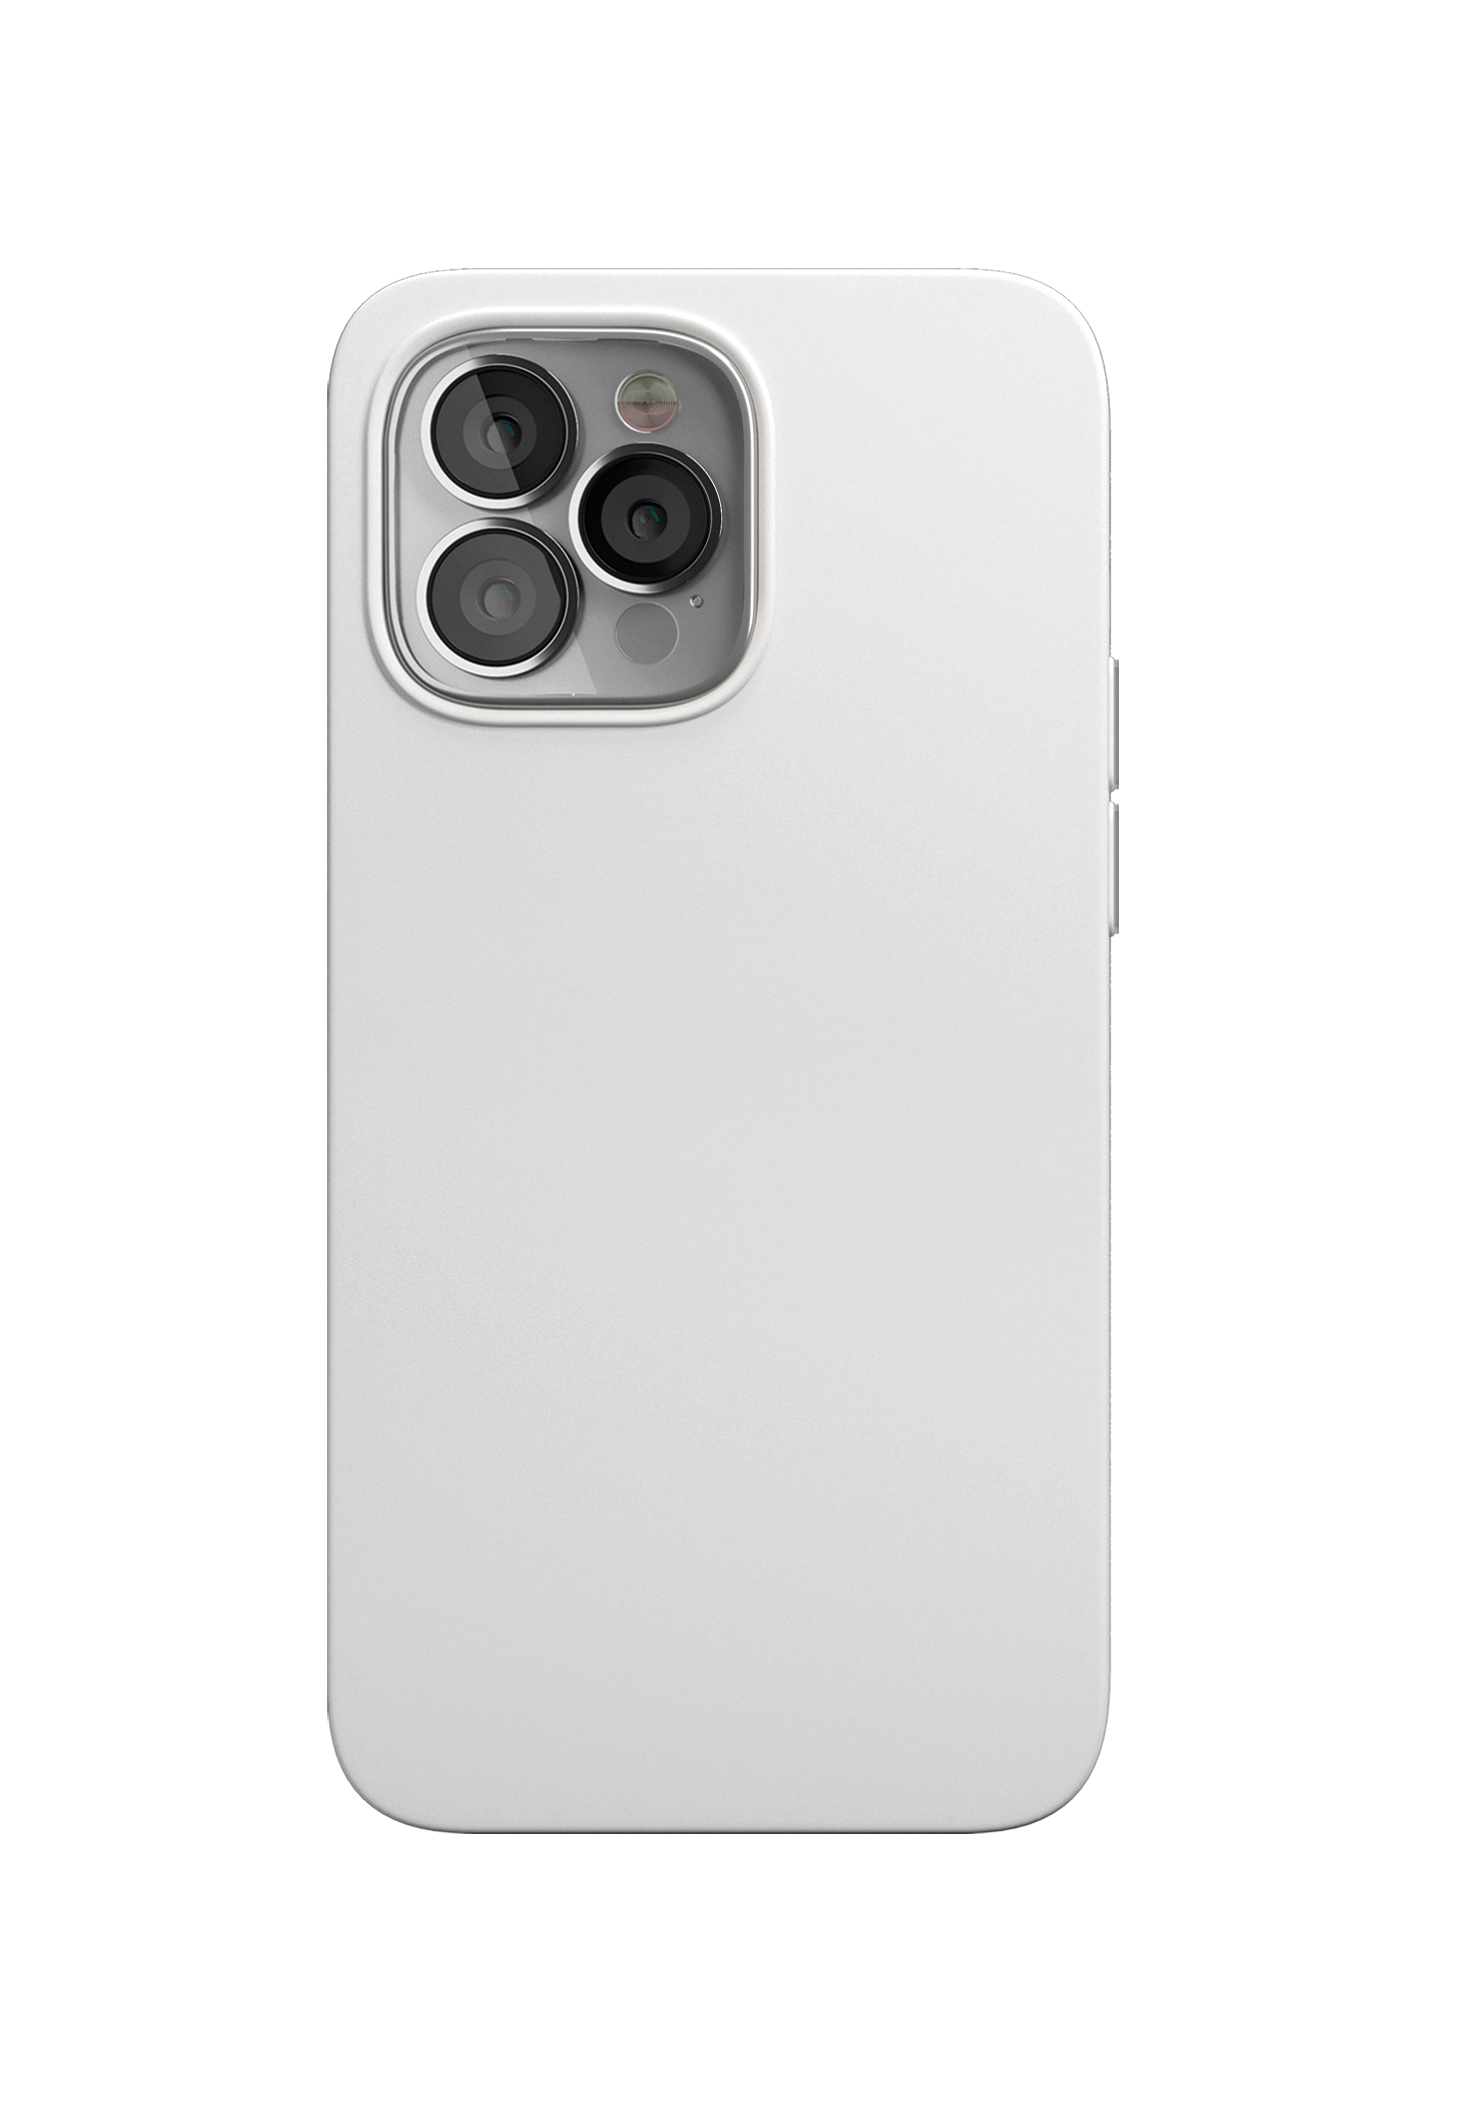 Фото — Чехол защитный "vlp" Silicone case with MagSafe для iPhone 13 Pro, белый